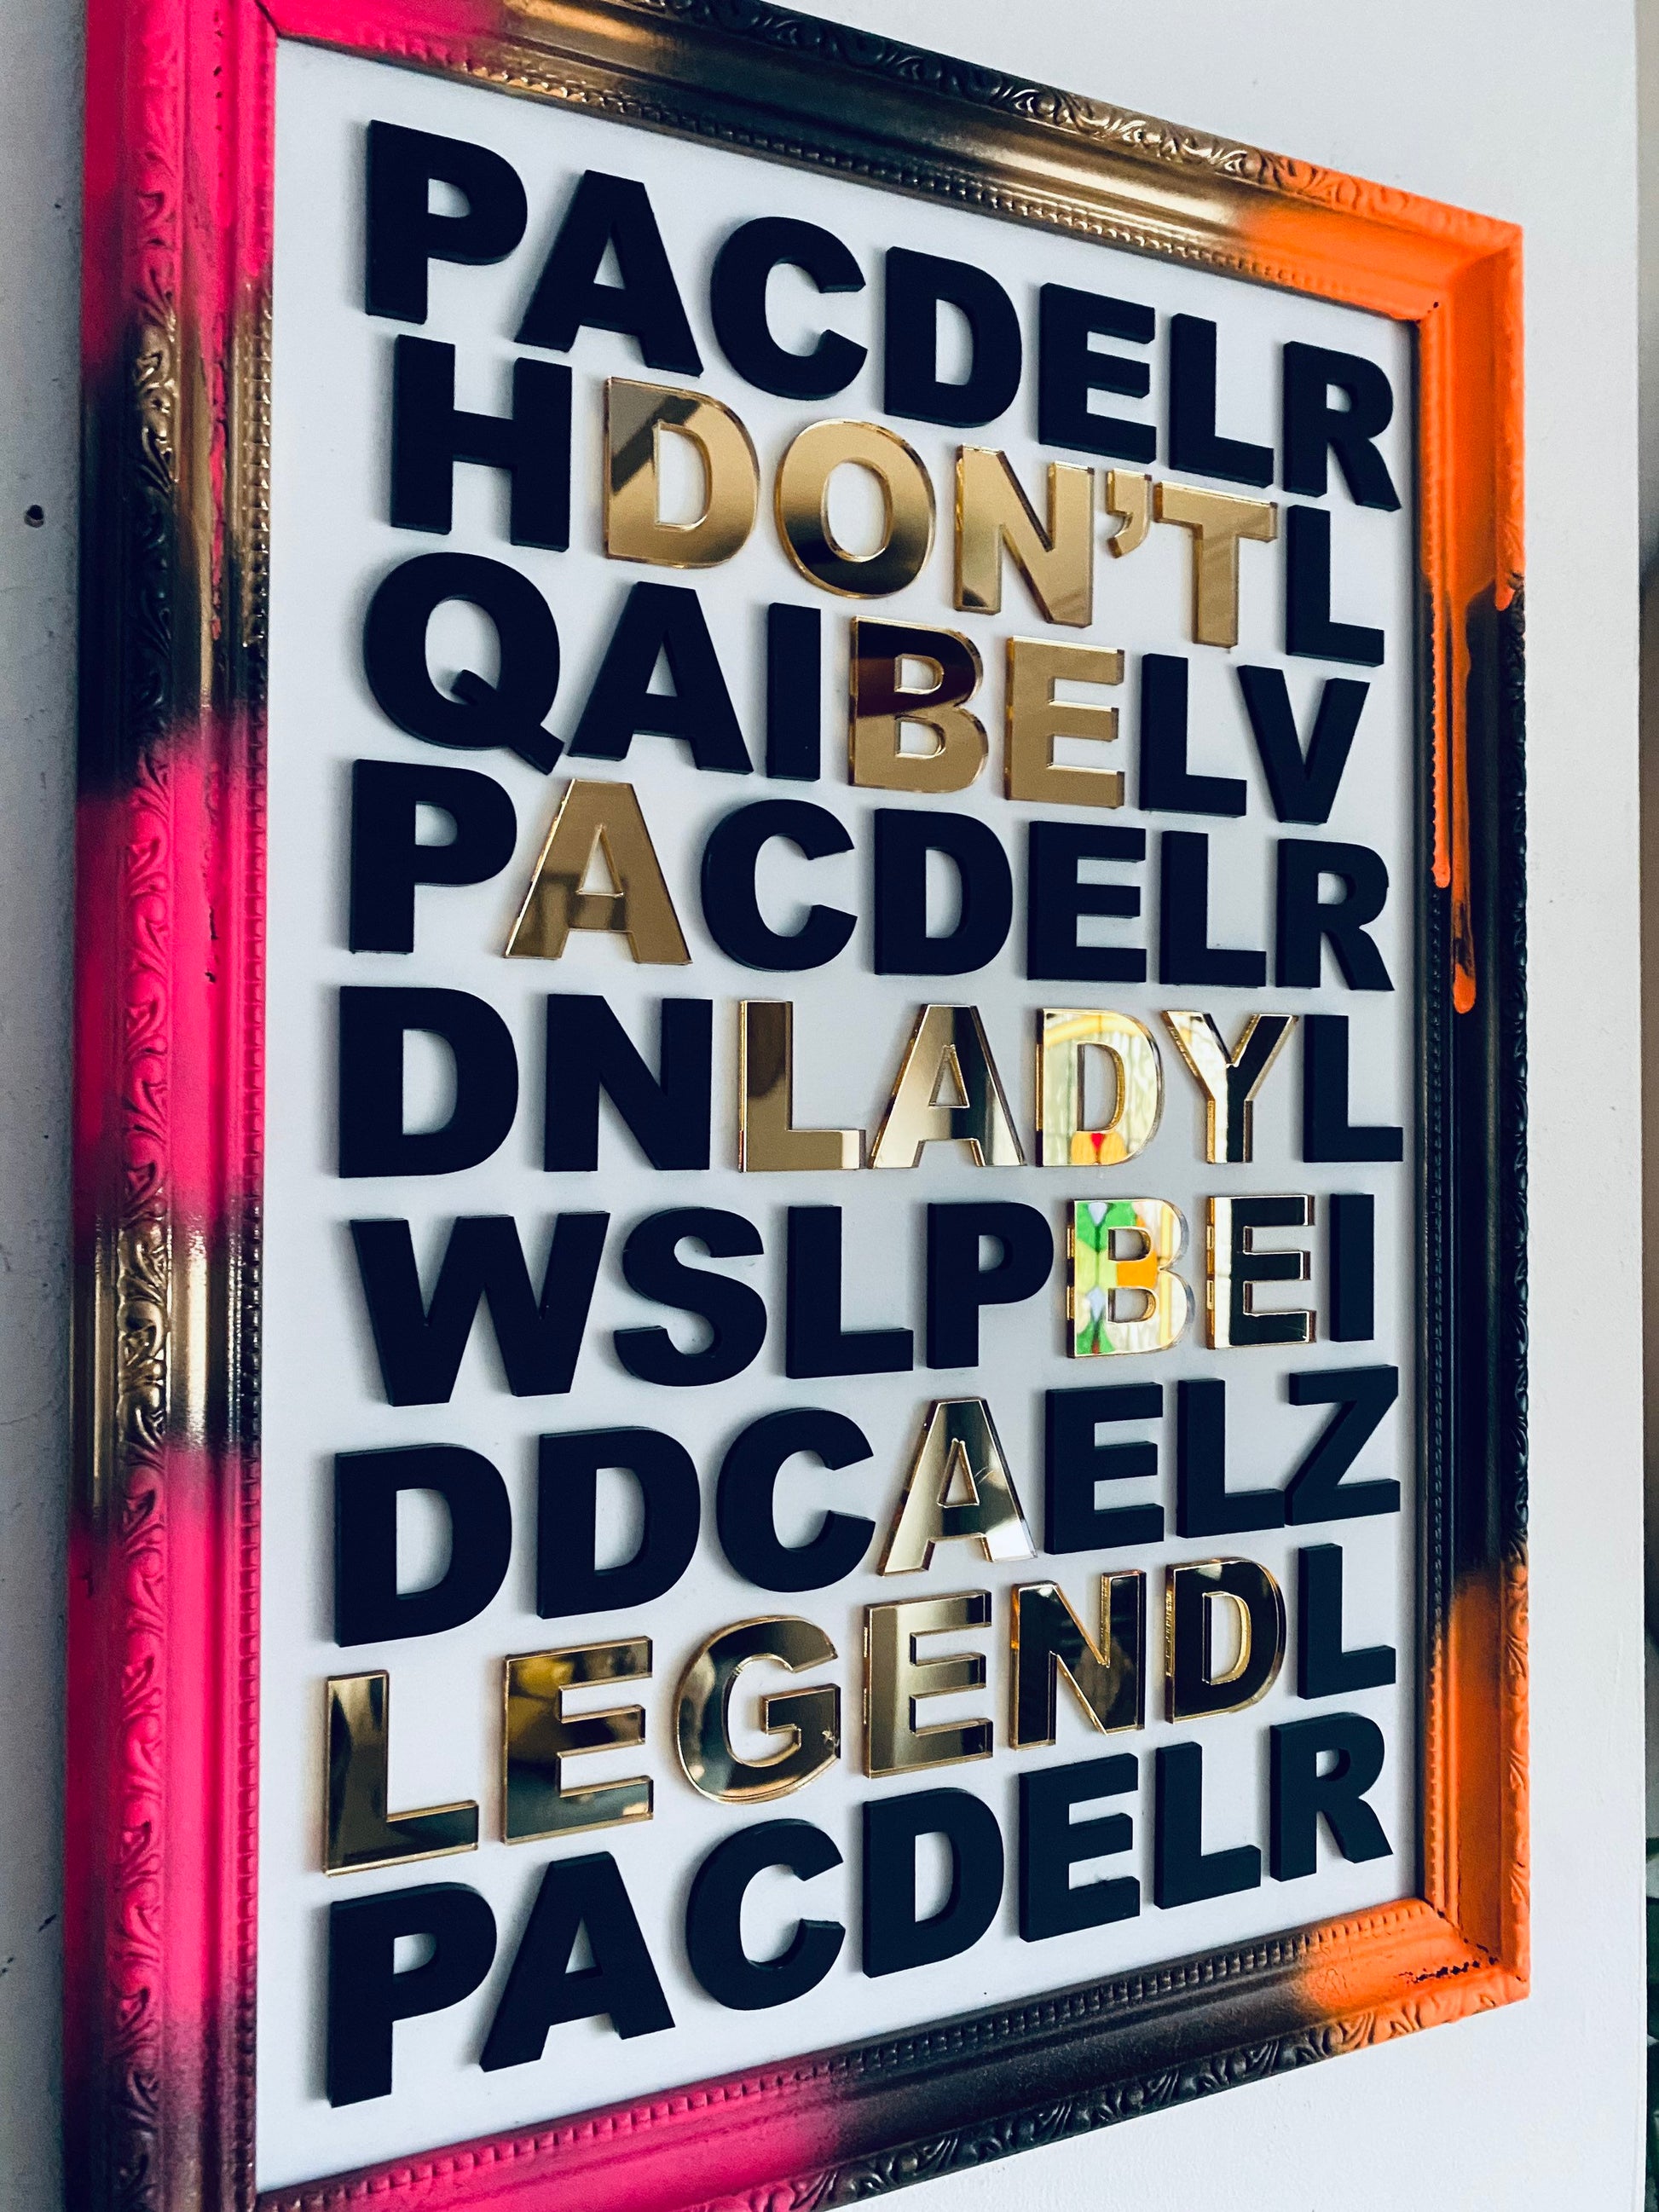 Don’t be a Lady be a Legend - Art Piece, 3D acrylic letters - choose frame colour